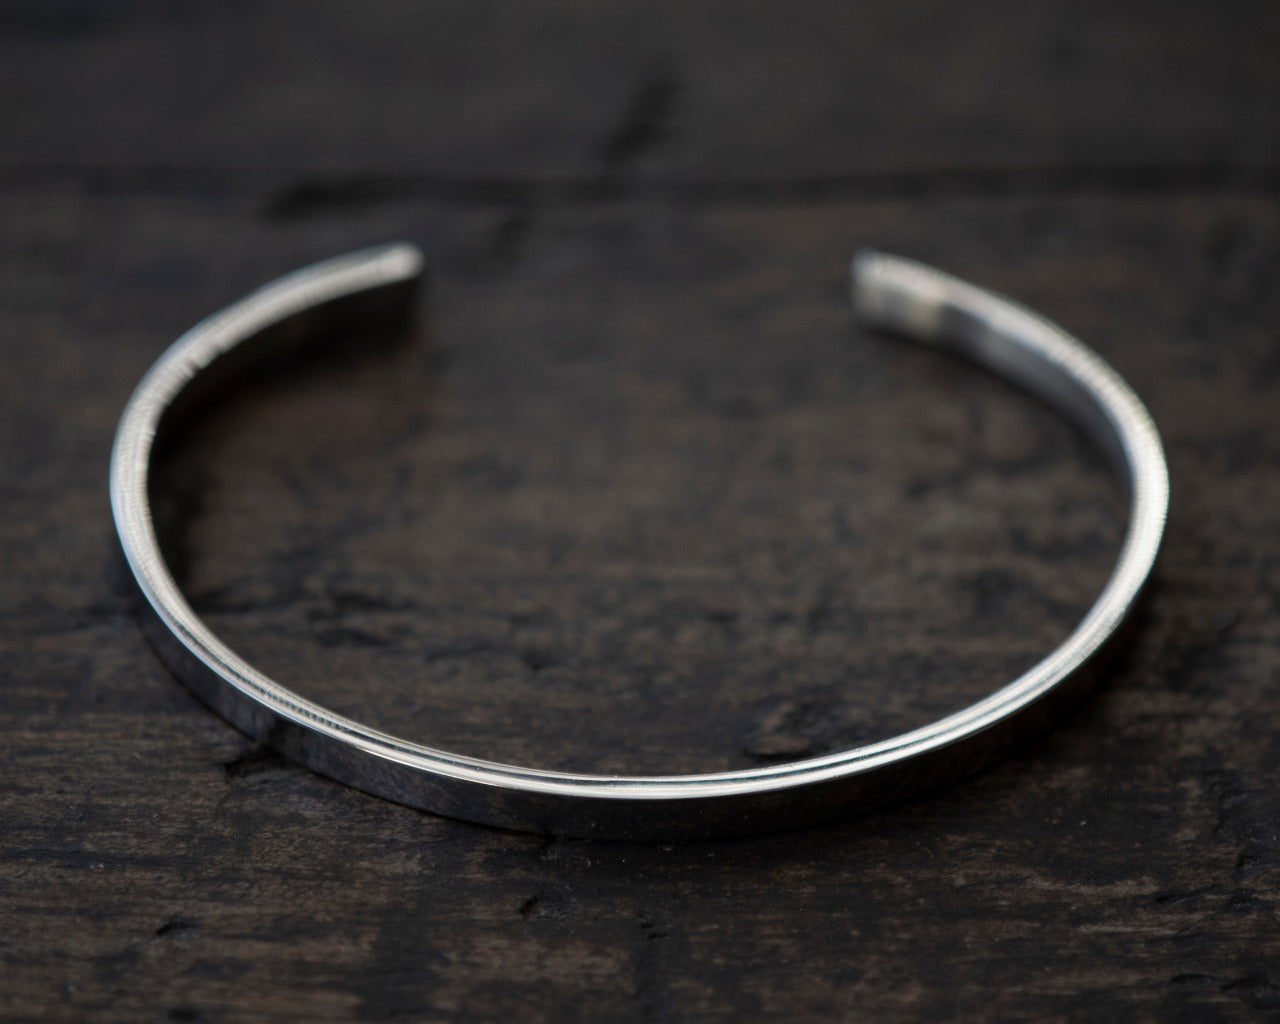 Silver bracelet 3mm